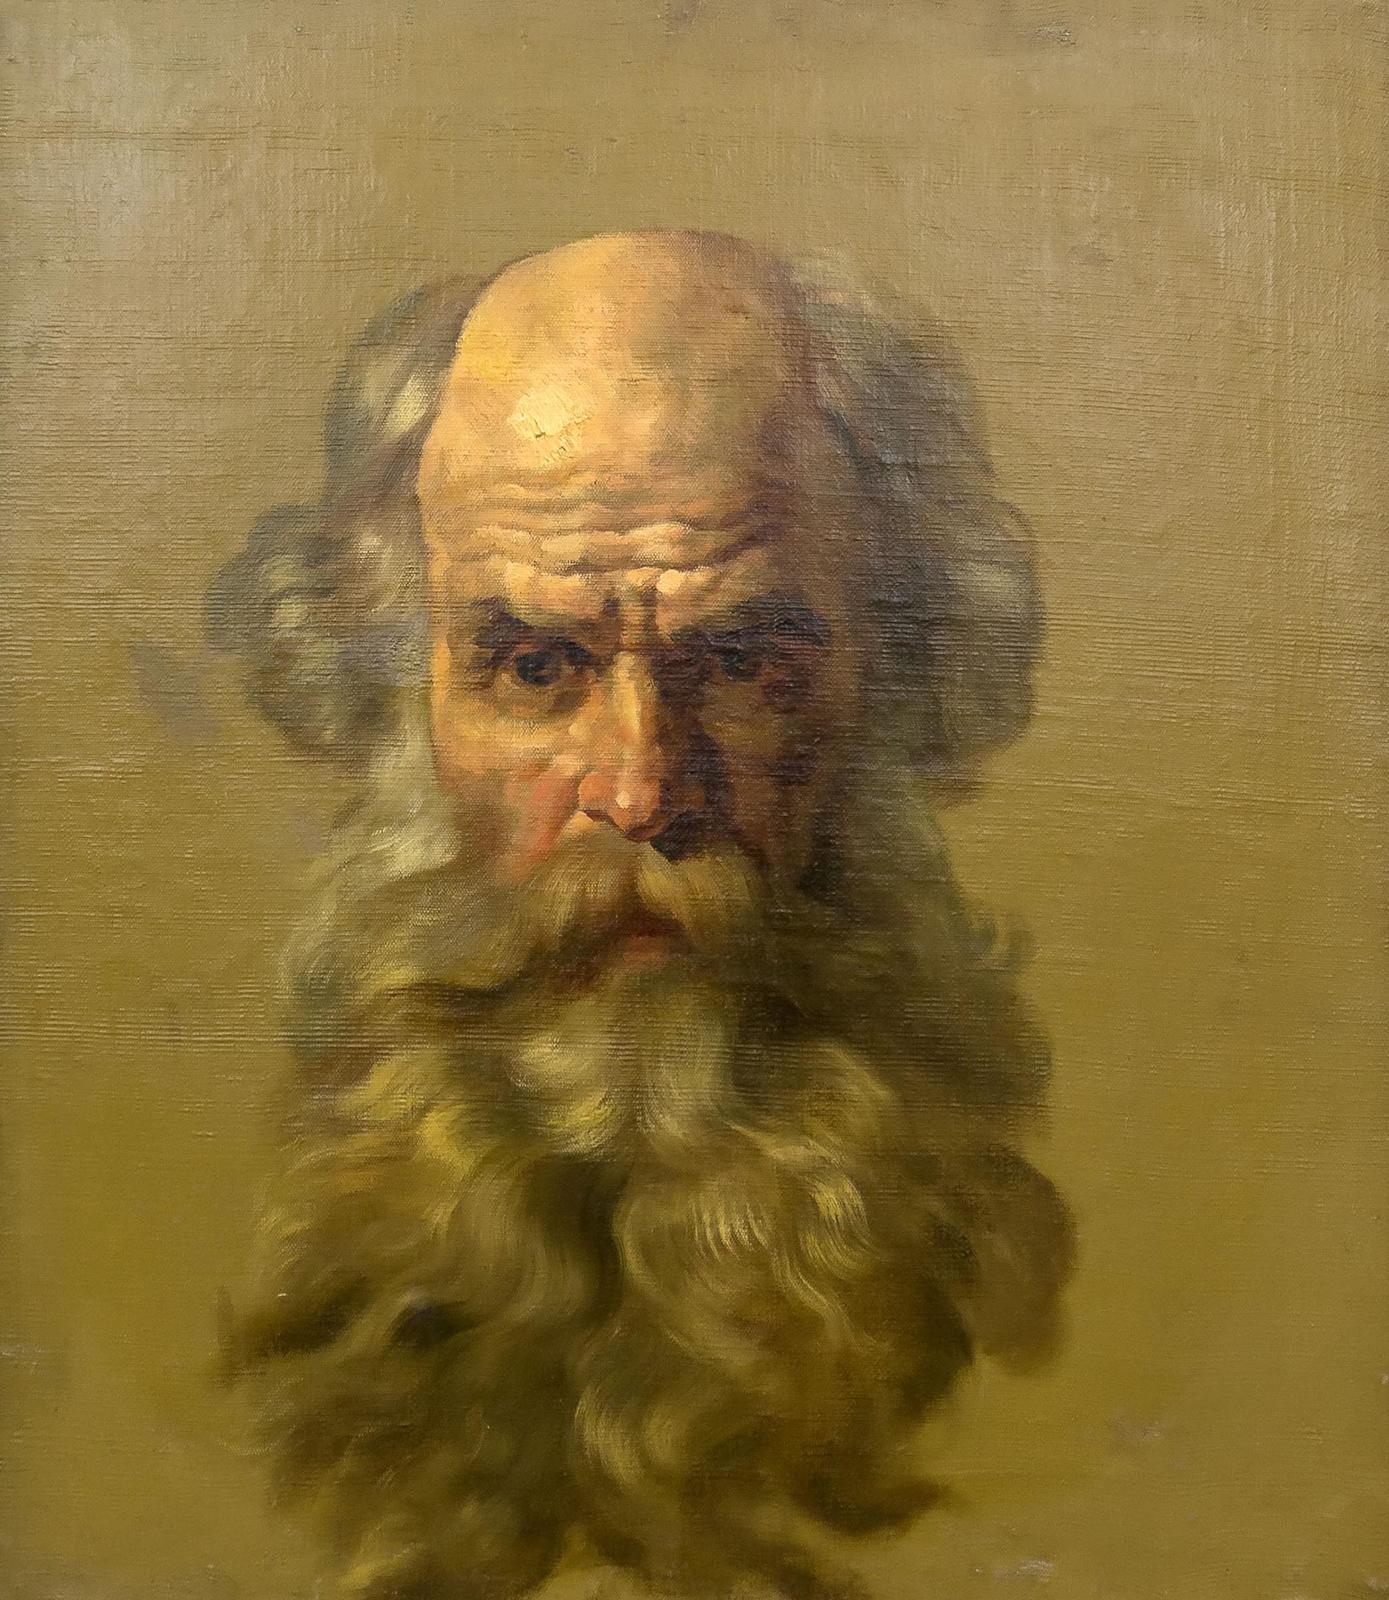 Фото №878812. Голова старика. 1843-1847. Брюллов К.П.